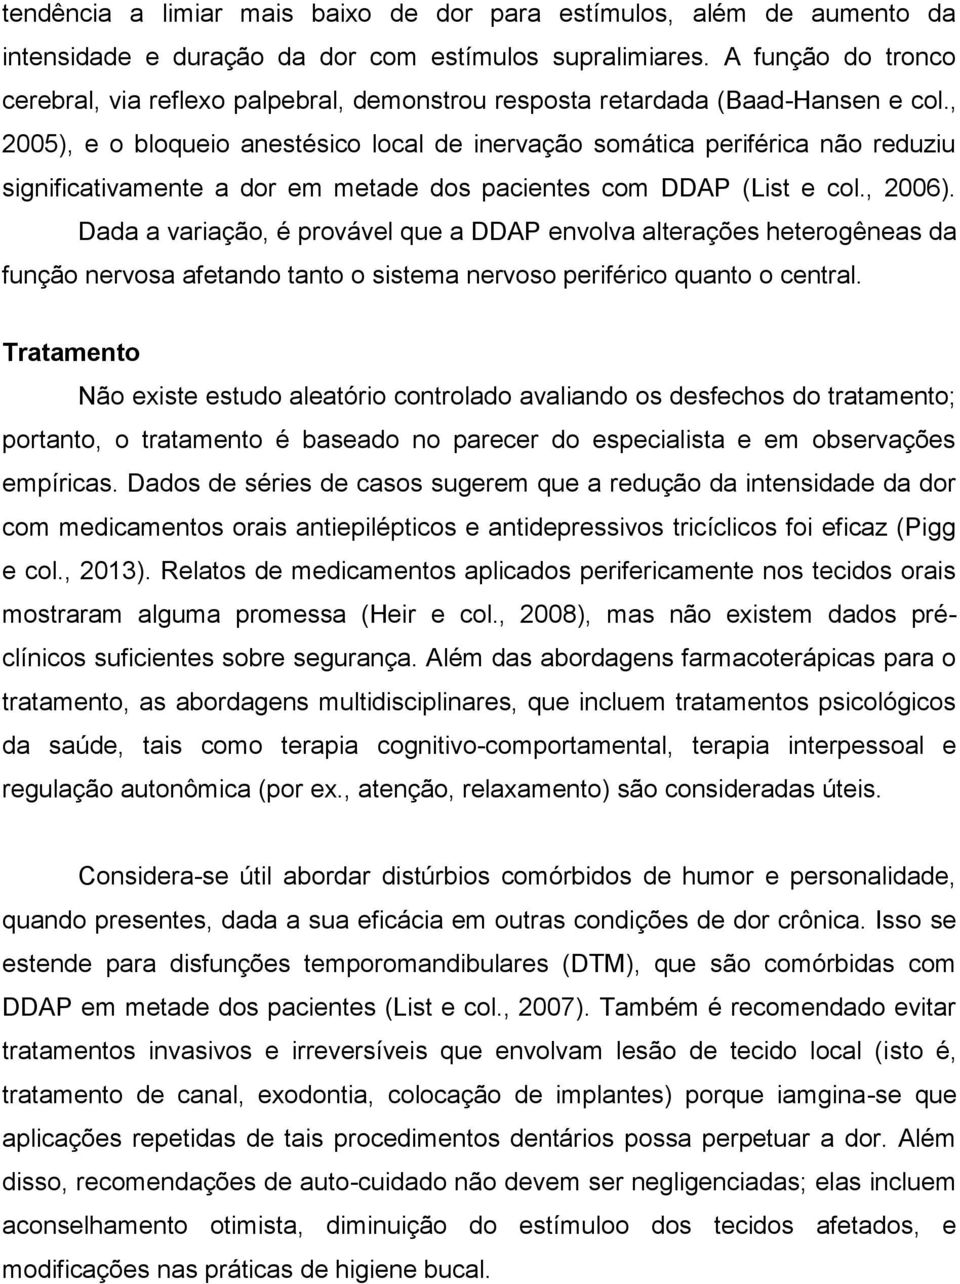 , 2005), e o bloqueio anestésico local de inervação somática periférica não reduziu significativamente a dor em metade dos pacientes com DDAP (List e col., 2006).